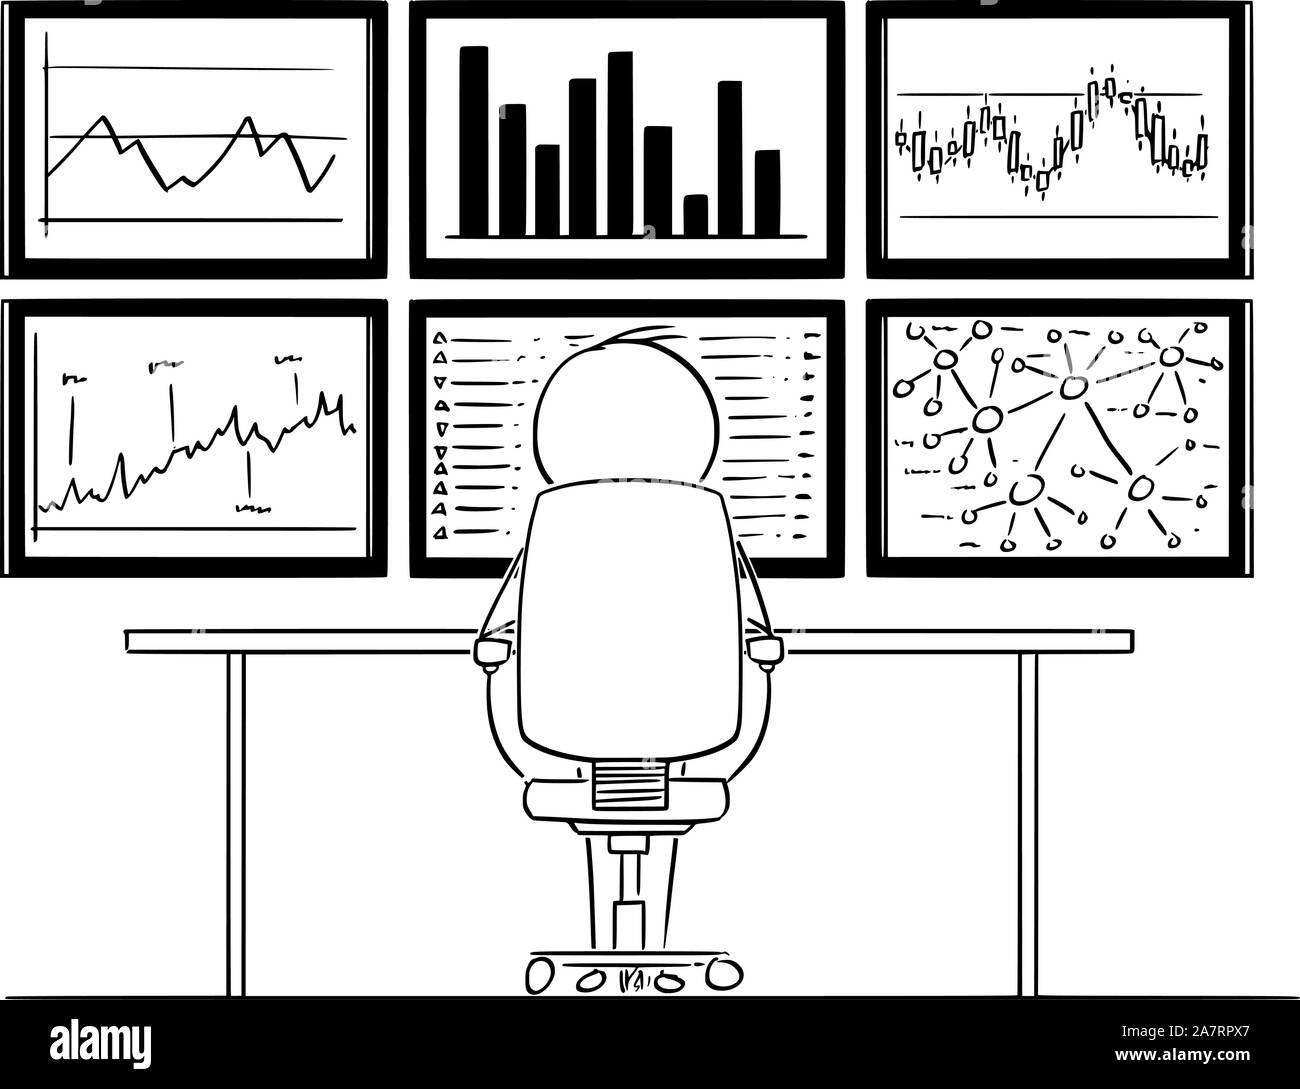 Vektor cartoon Strichmännchen Zeichnen konzeptionelle Darstellung der Mann oder Geschäftsmann vor sechs Computer Monitore in der Wand sitzen, und die Analyse von Graphen und Marktdaten. Stock Vektor